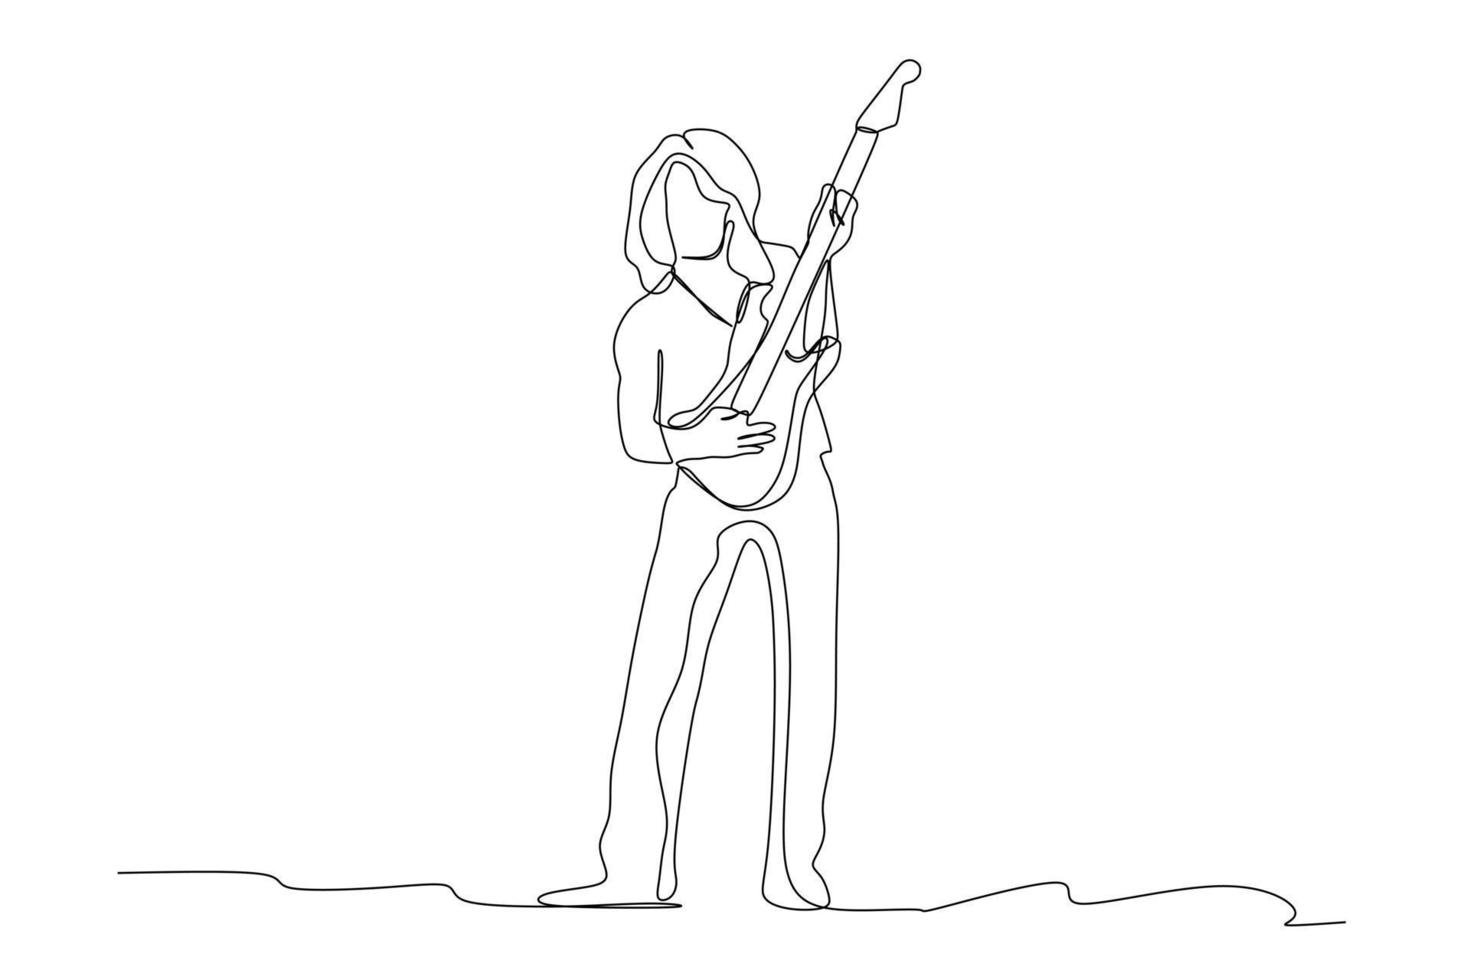 desenho de linha contínua do guitarrista tocando guitarra elétrica. conceito de performance de artista de músico dinâmico ilustração em vetor design de desenho gráfico de linha única